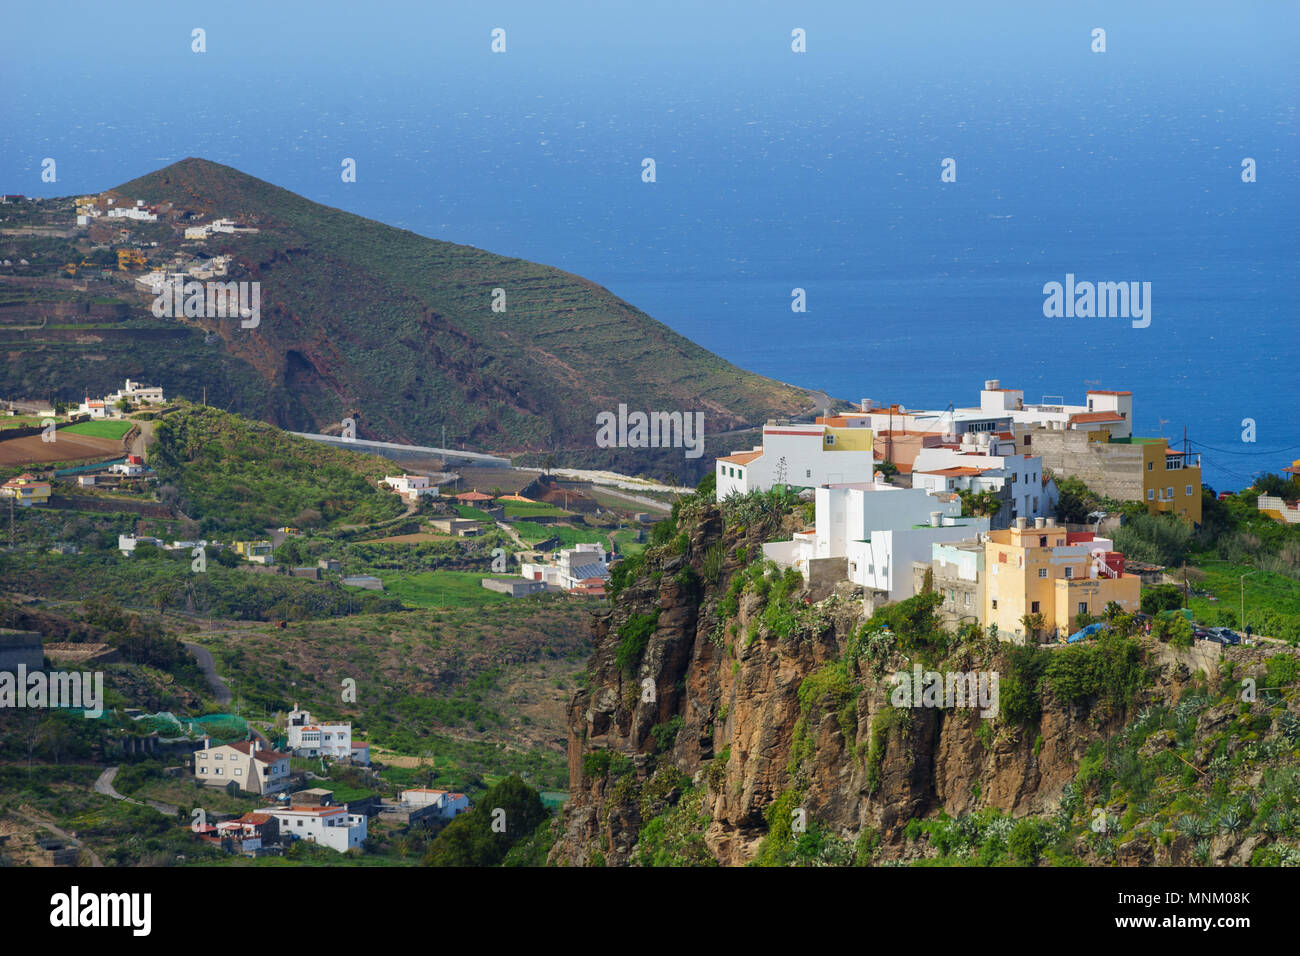 Villaggio su piste e scogliera della parte settentrionale di Gran Canaria, Oceano Atlantico su sfondo, Isole canarie, Spagna Foto Stock